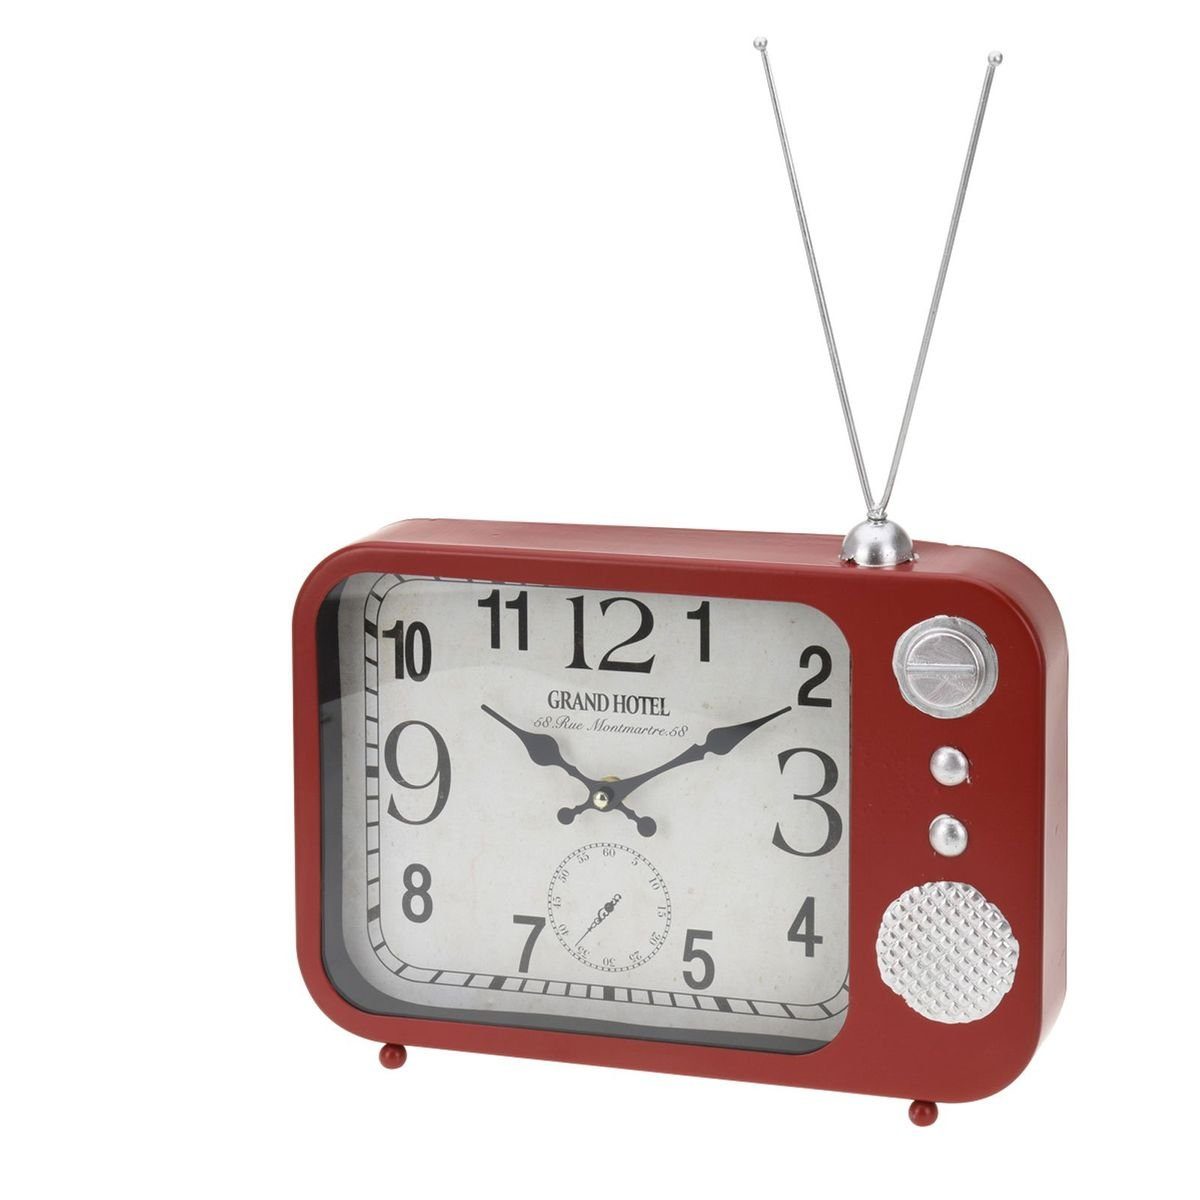 23x33x5cm Uhr Radiouhr oder Tischuhr zum Stellen Aufhängen Tischuhr Radioform rot Retro